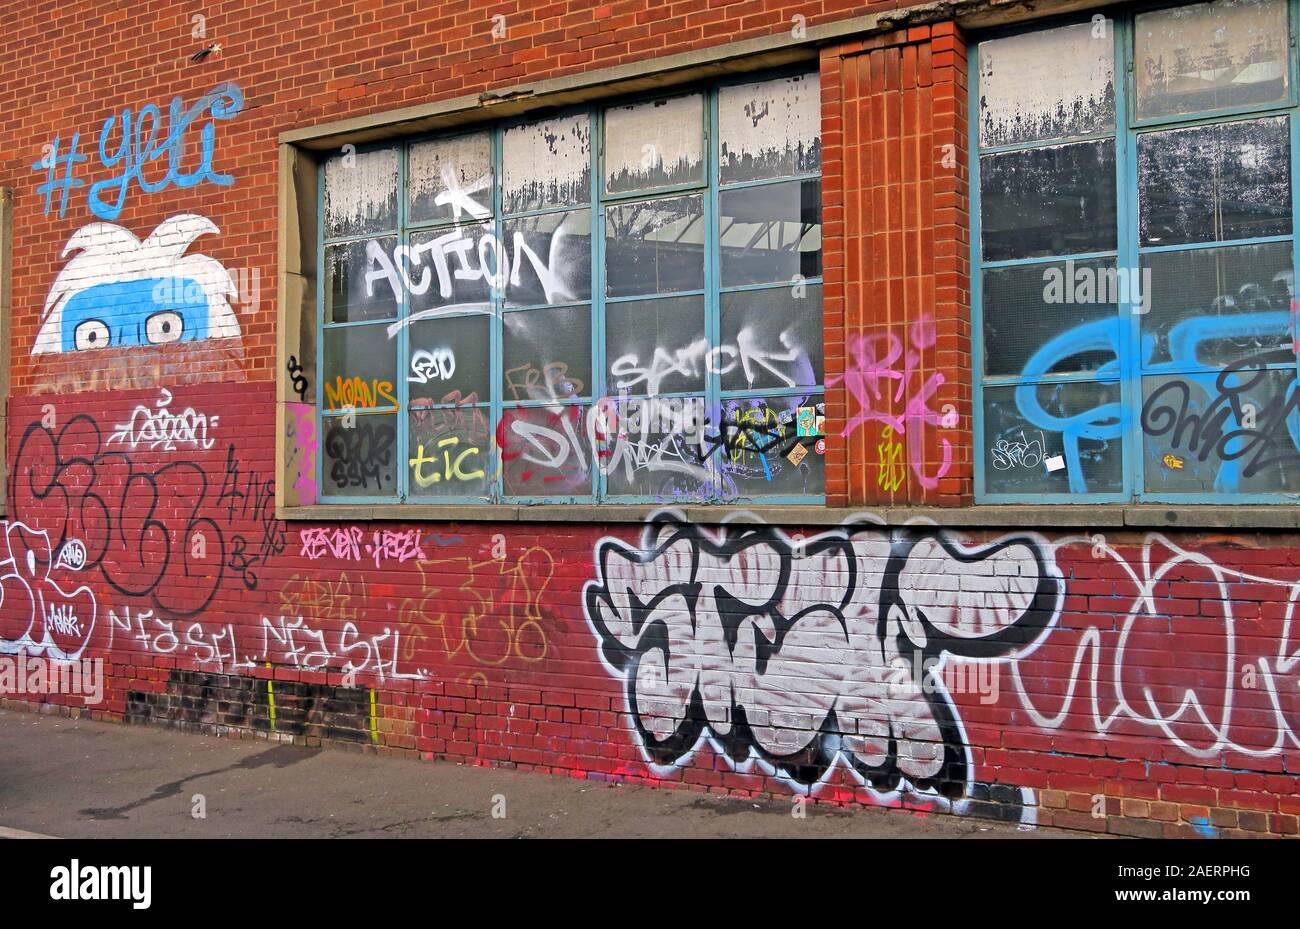 Graffiti et art urbain de rue sur l'usine abandonnée, dans la rue de projecteur, Digbeth, Bordesley & Highgate, Birmingham, West Midlands, Angleterre, Royaume-Uni, B5 5ST Banque D'Images